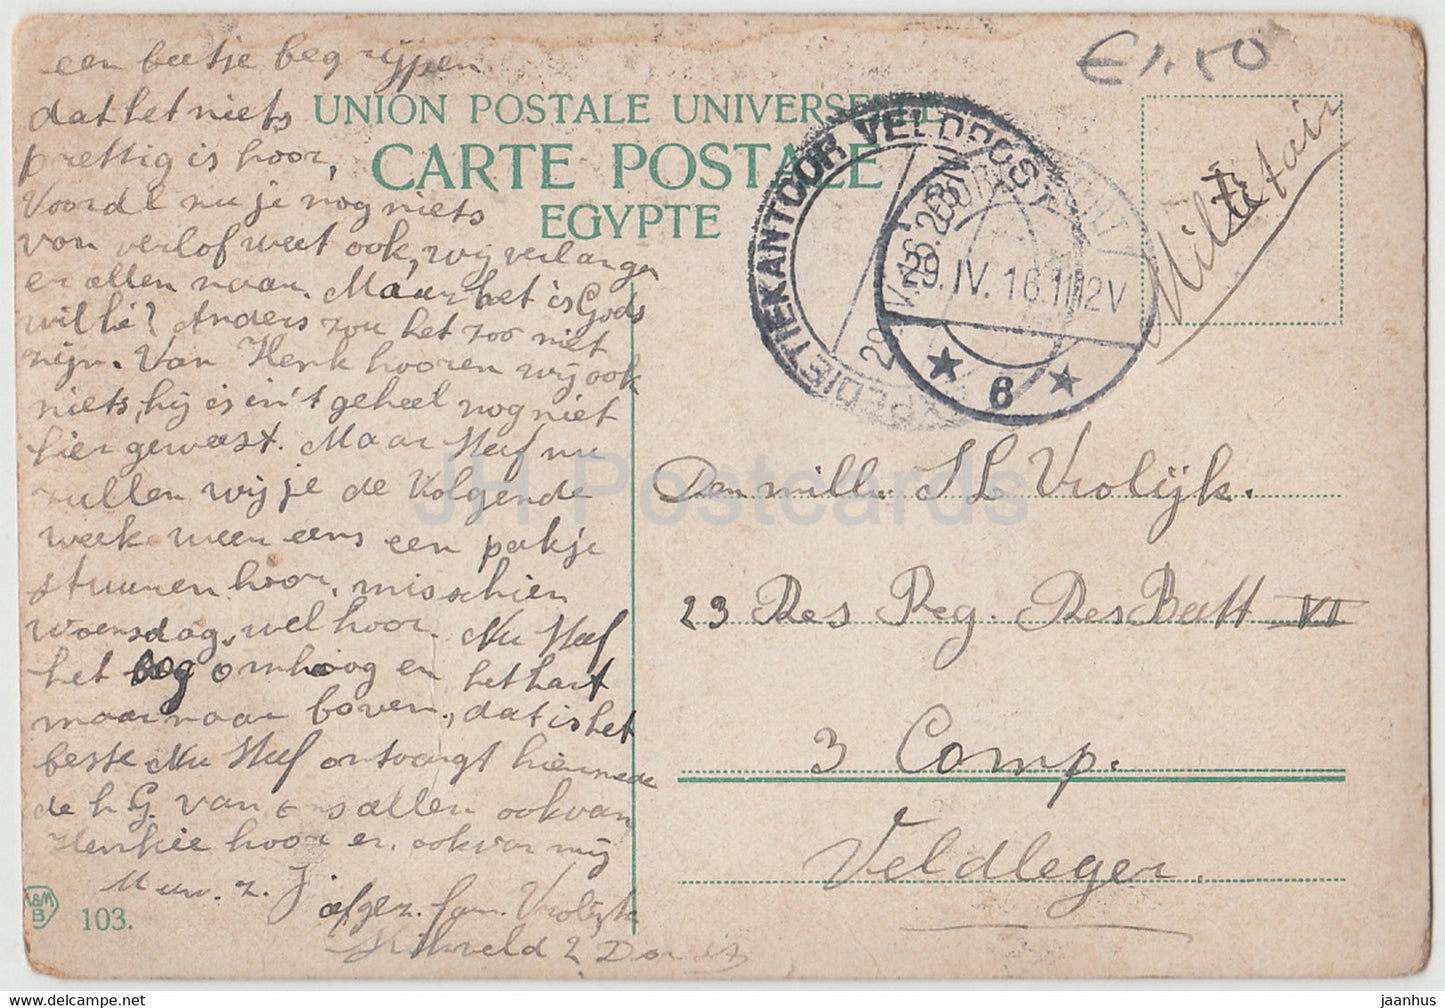 Cairo - Caire - Charretiers aux environs de la Citadelle a Rameheh - 103 - old postcard - 1916 - Egypt - used